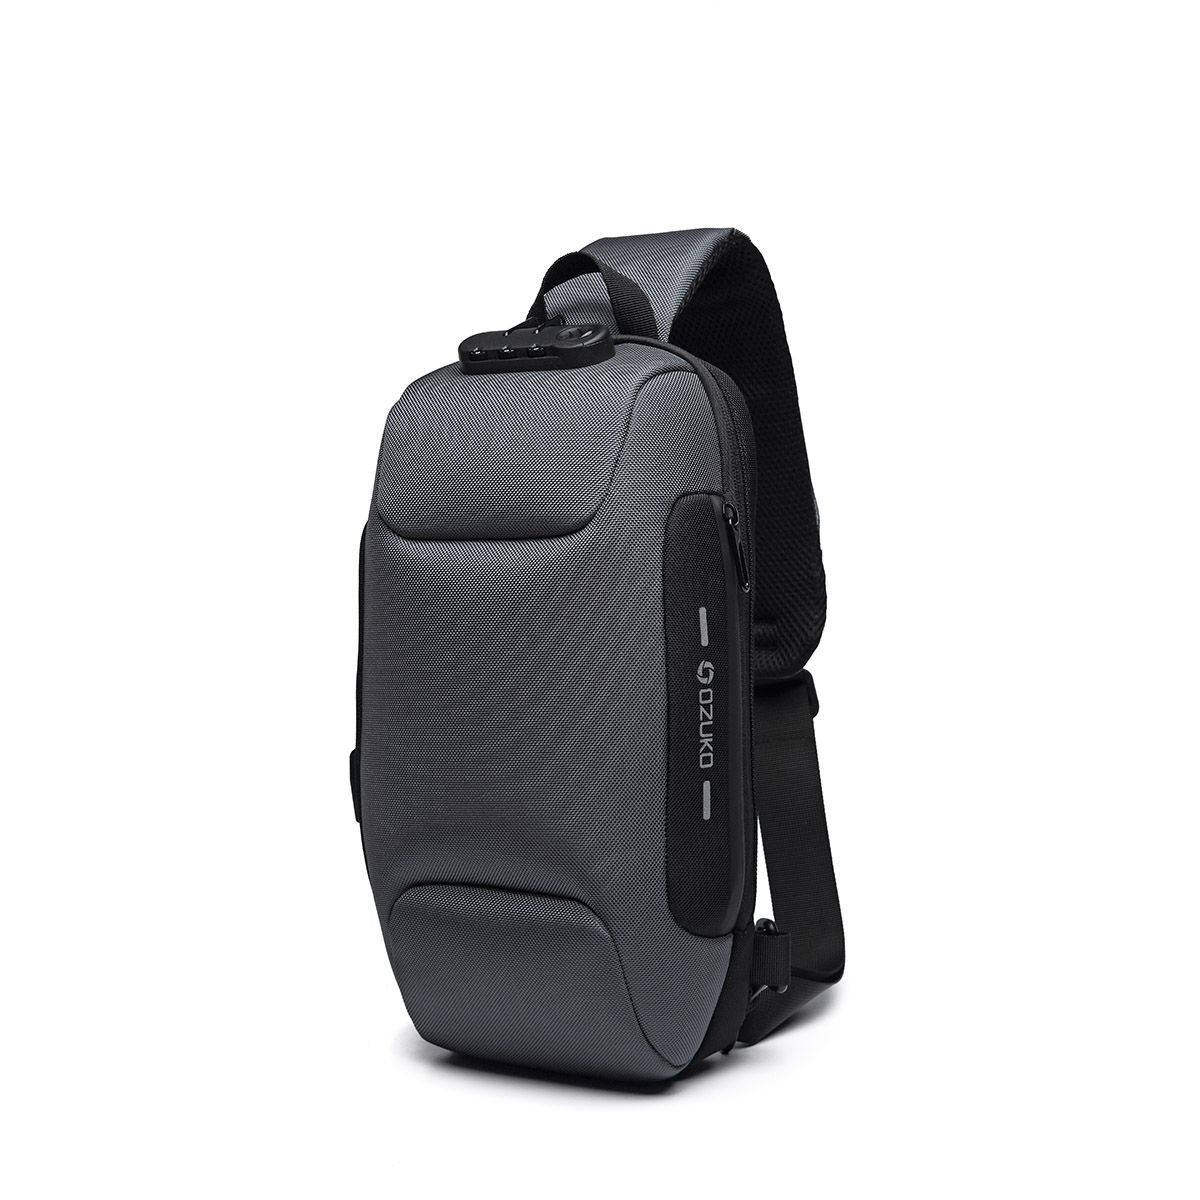 Ozuko 9223 Range Grey Color Soft Case Backpack: Buy Ozuko 9223 Range ...